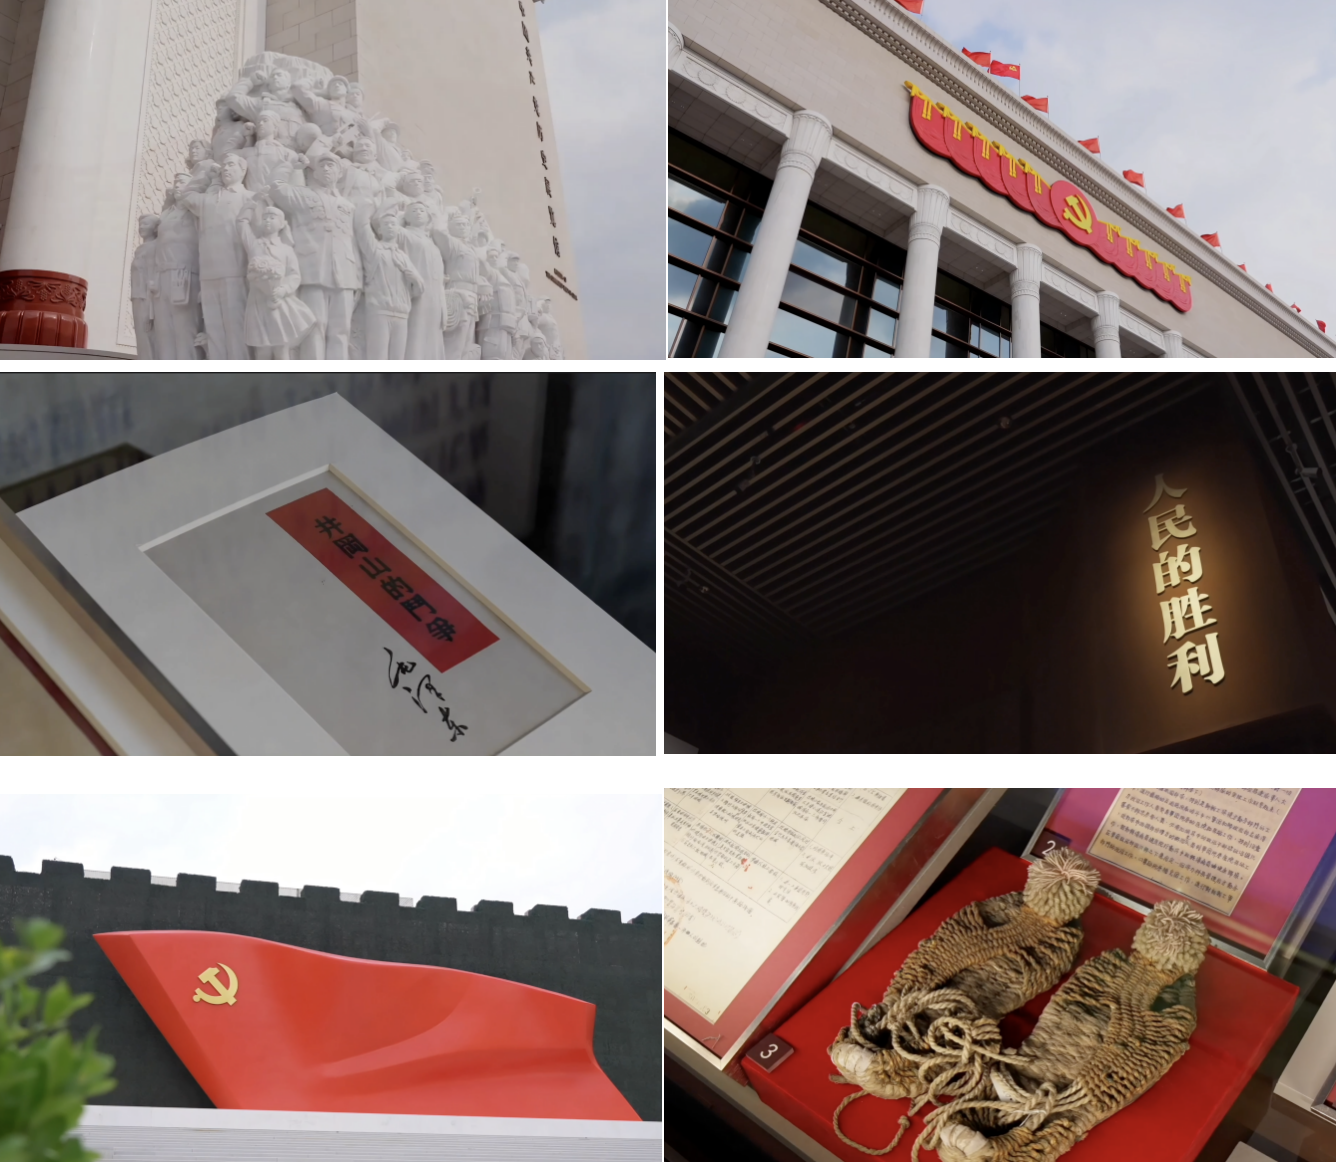 中国共产党史展览馆外景